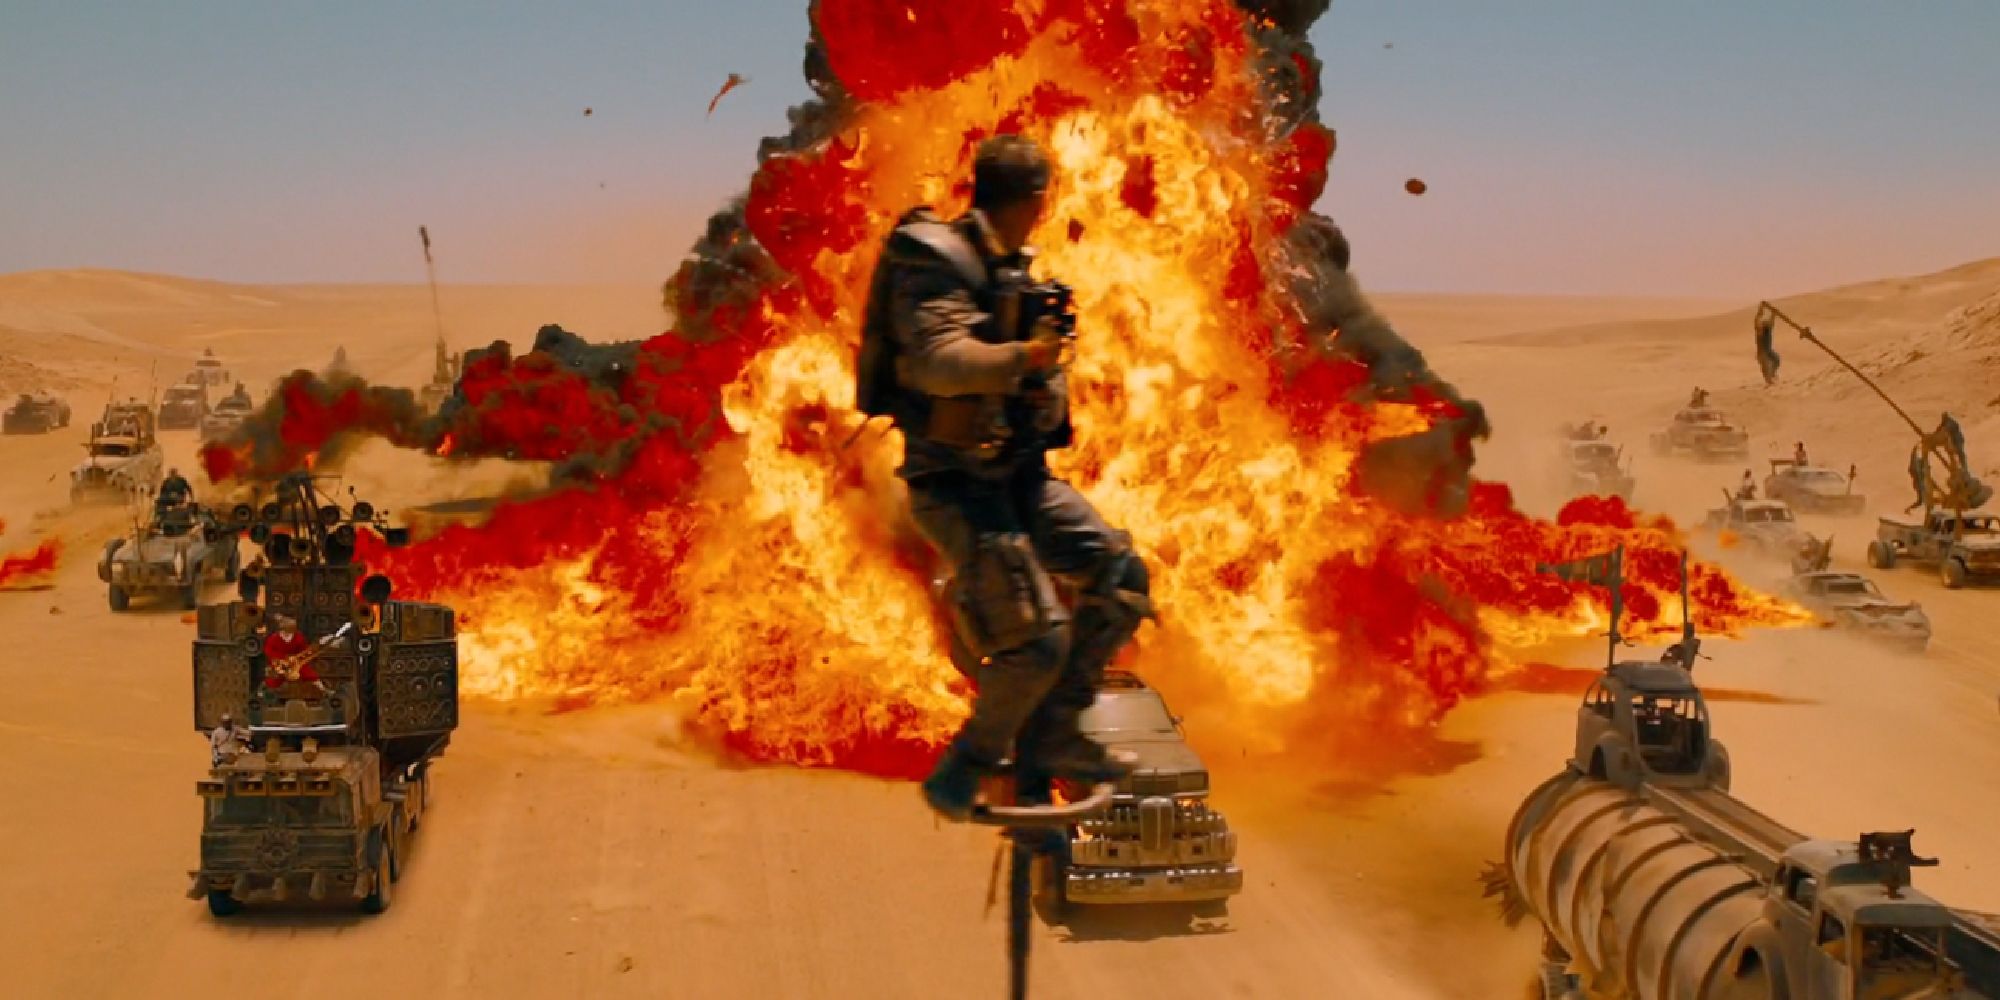 Ledakan besar di Mad Max Fury Road - 2015